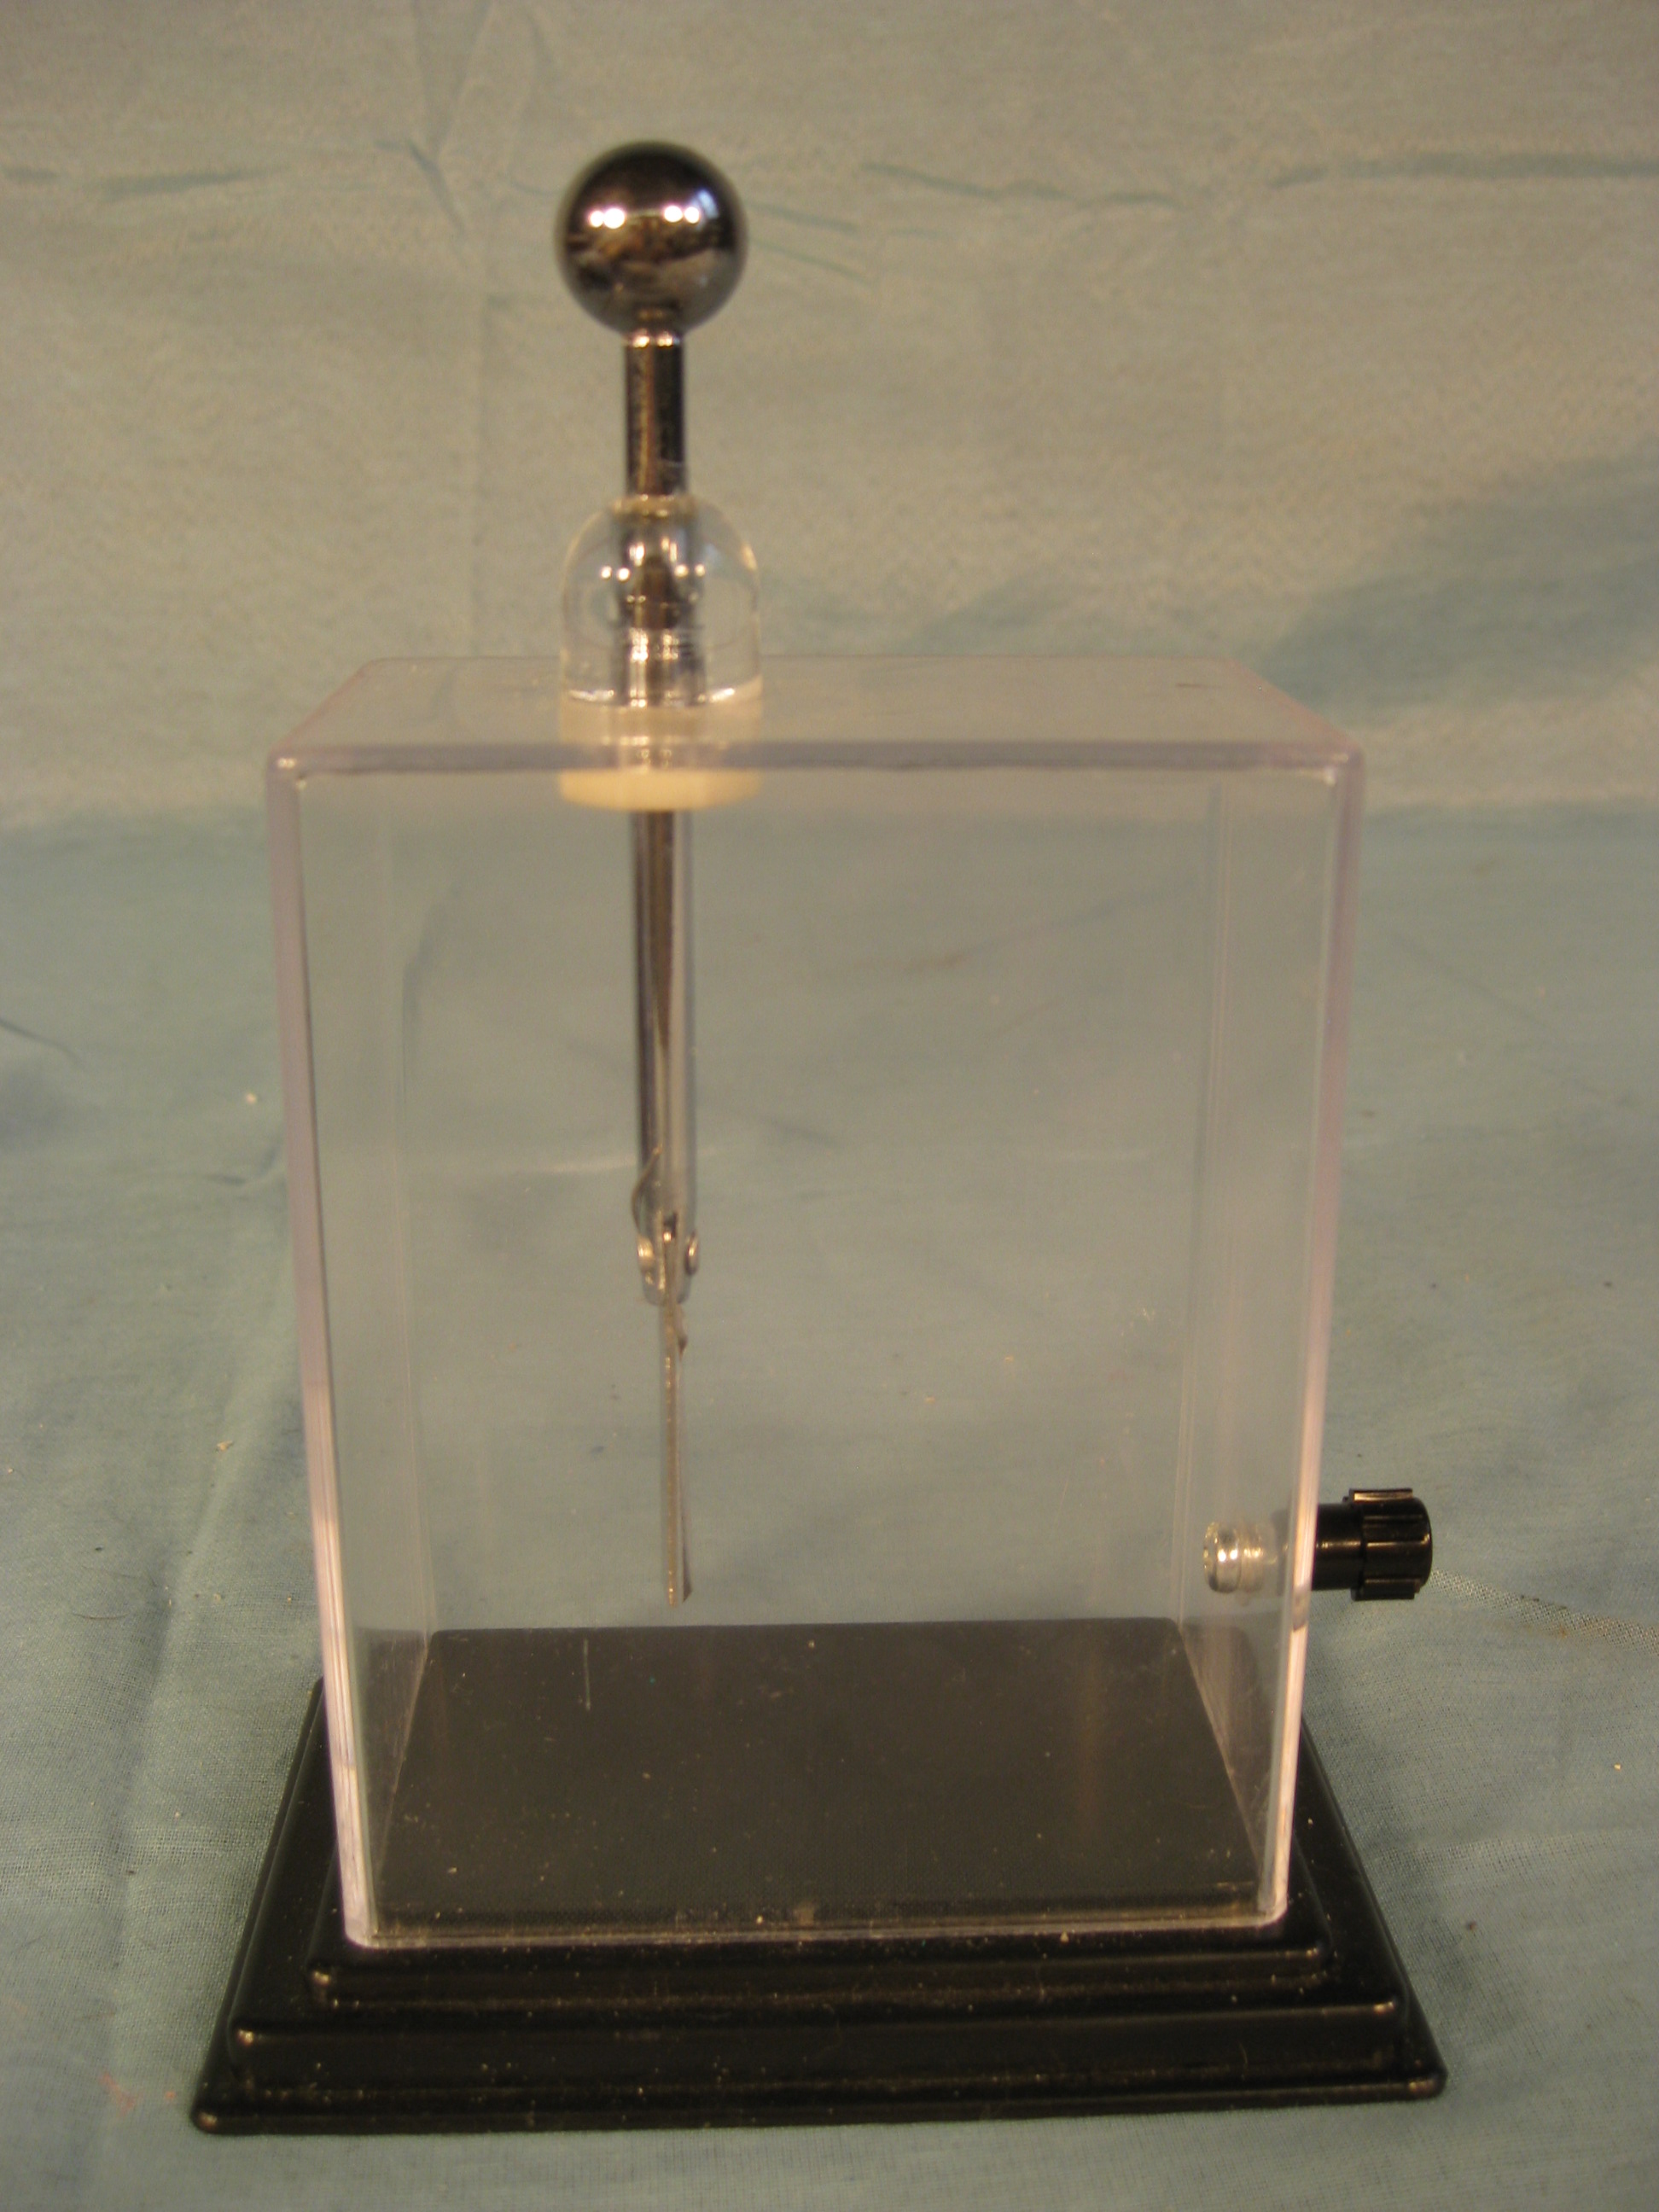 Electrostatic voltmeter. 1